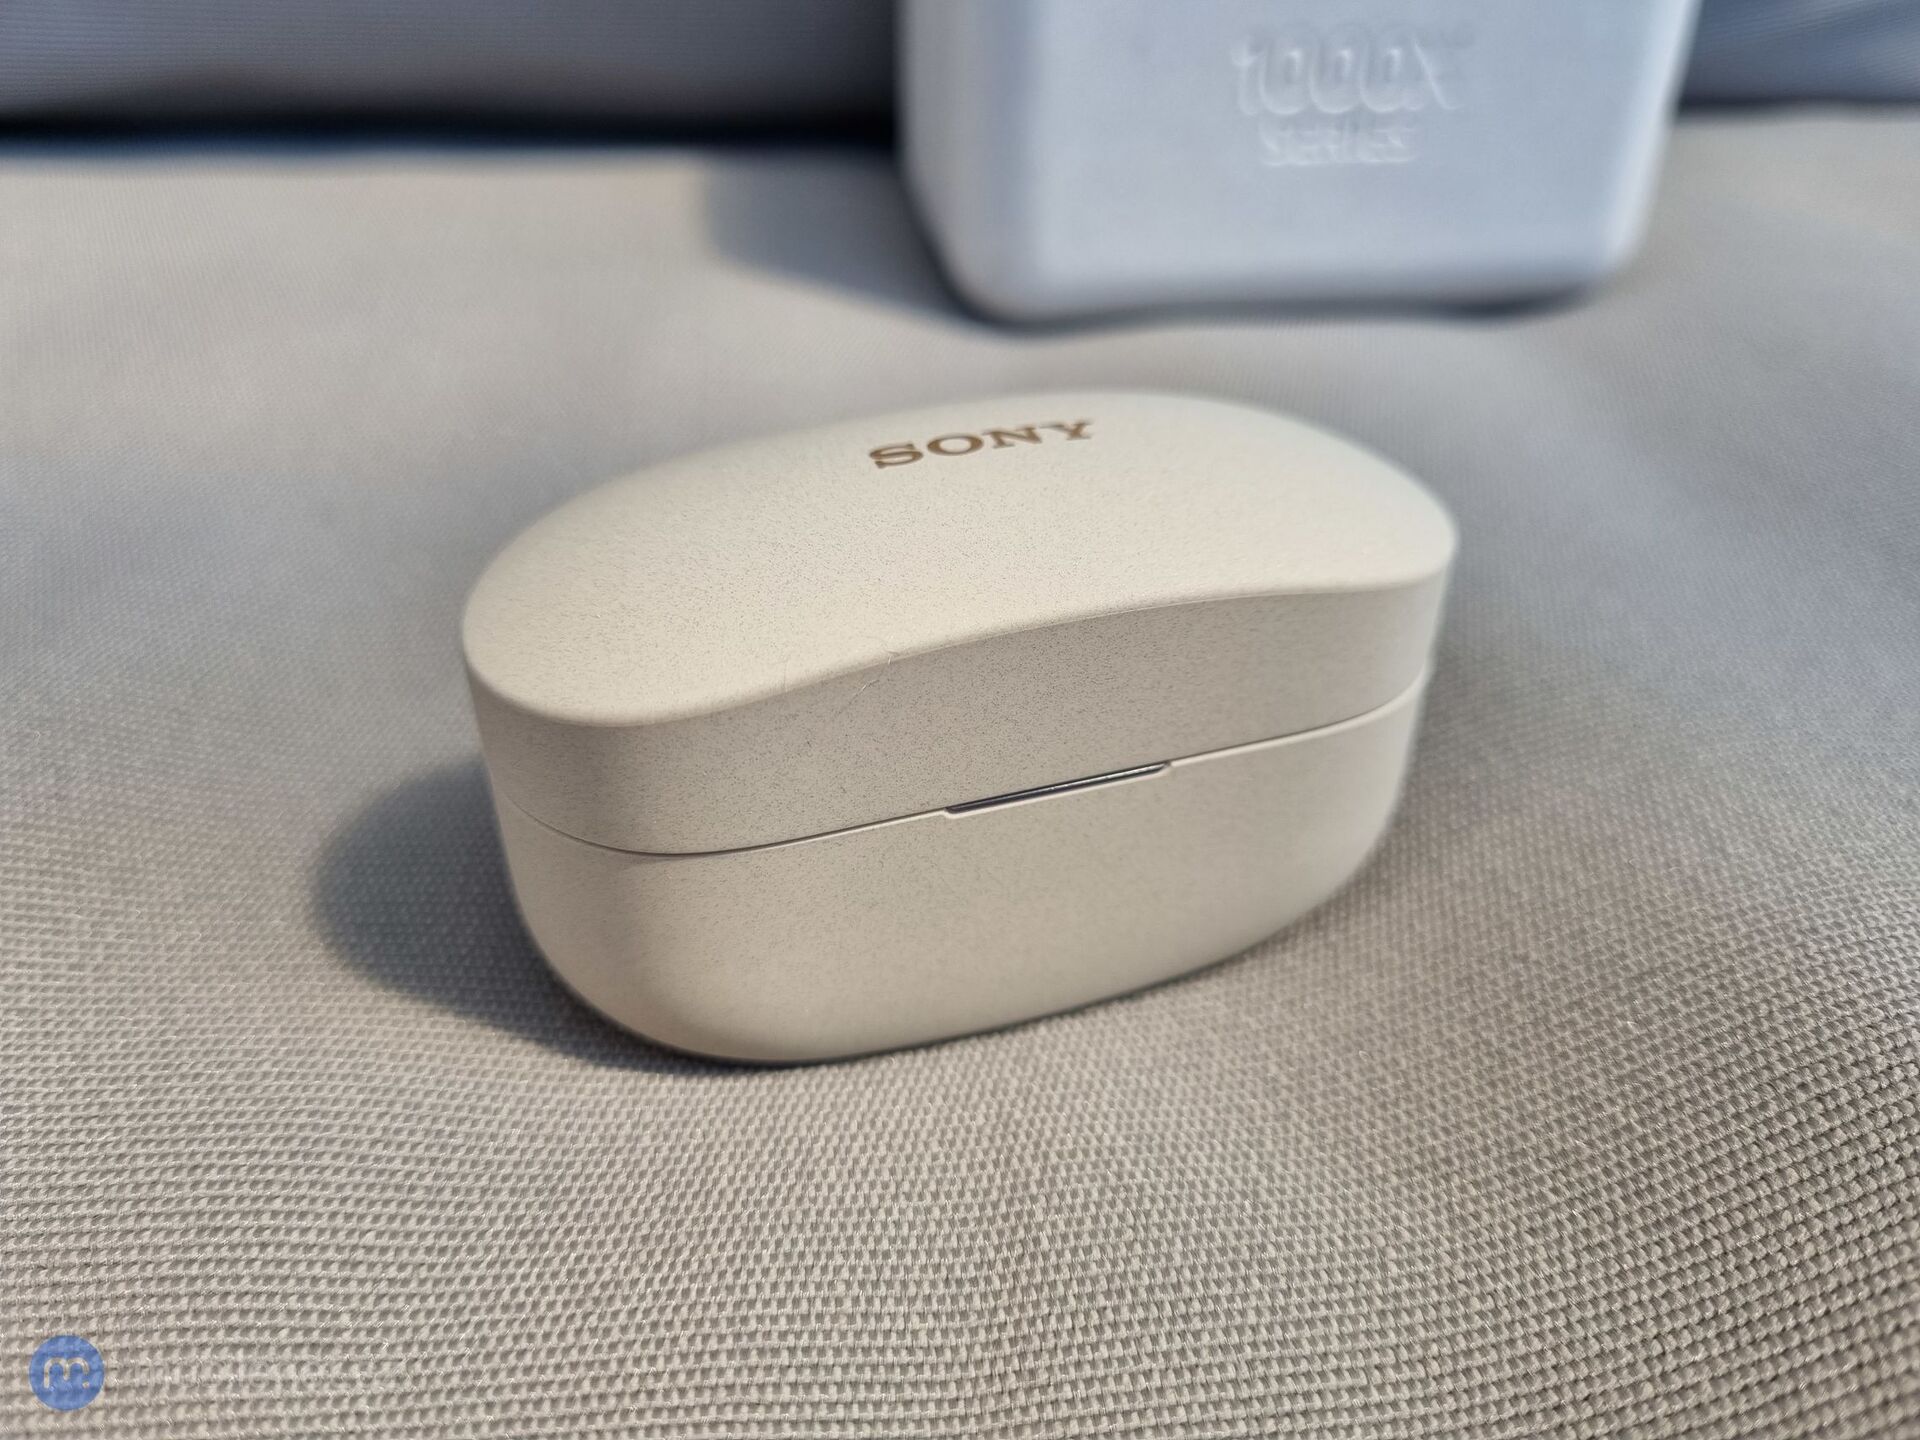 Sony WF-1000XM4 malá ikonka